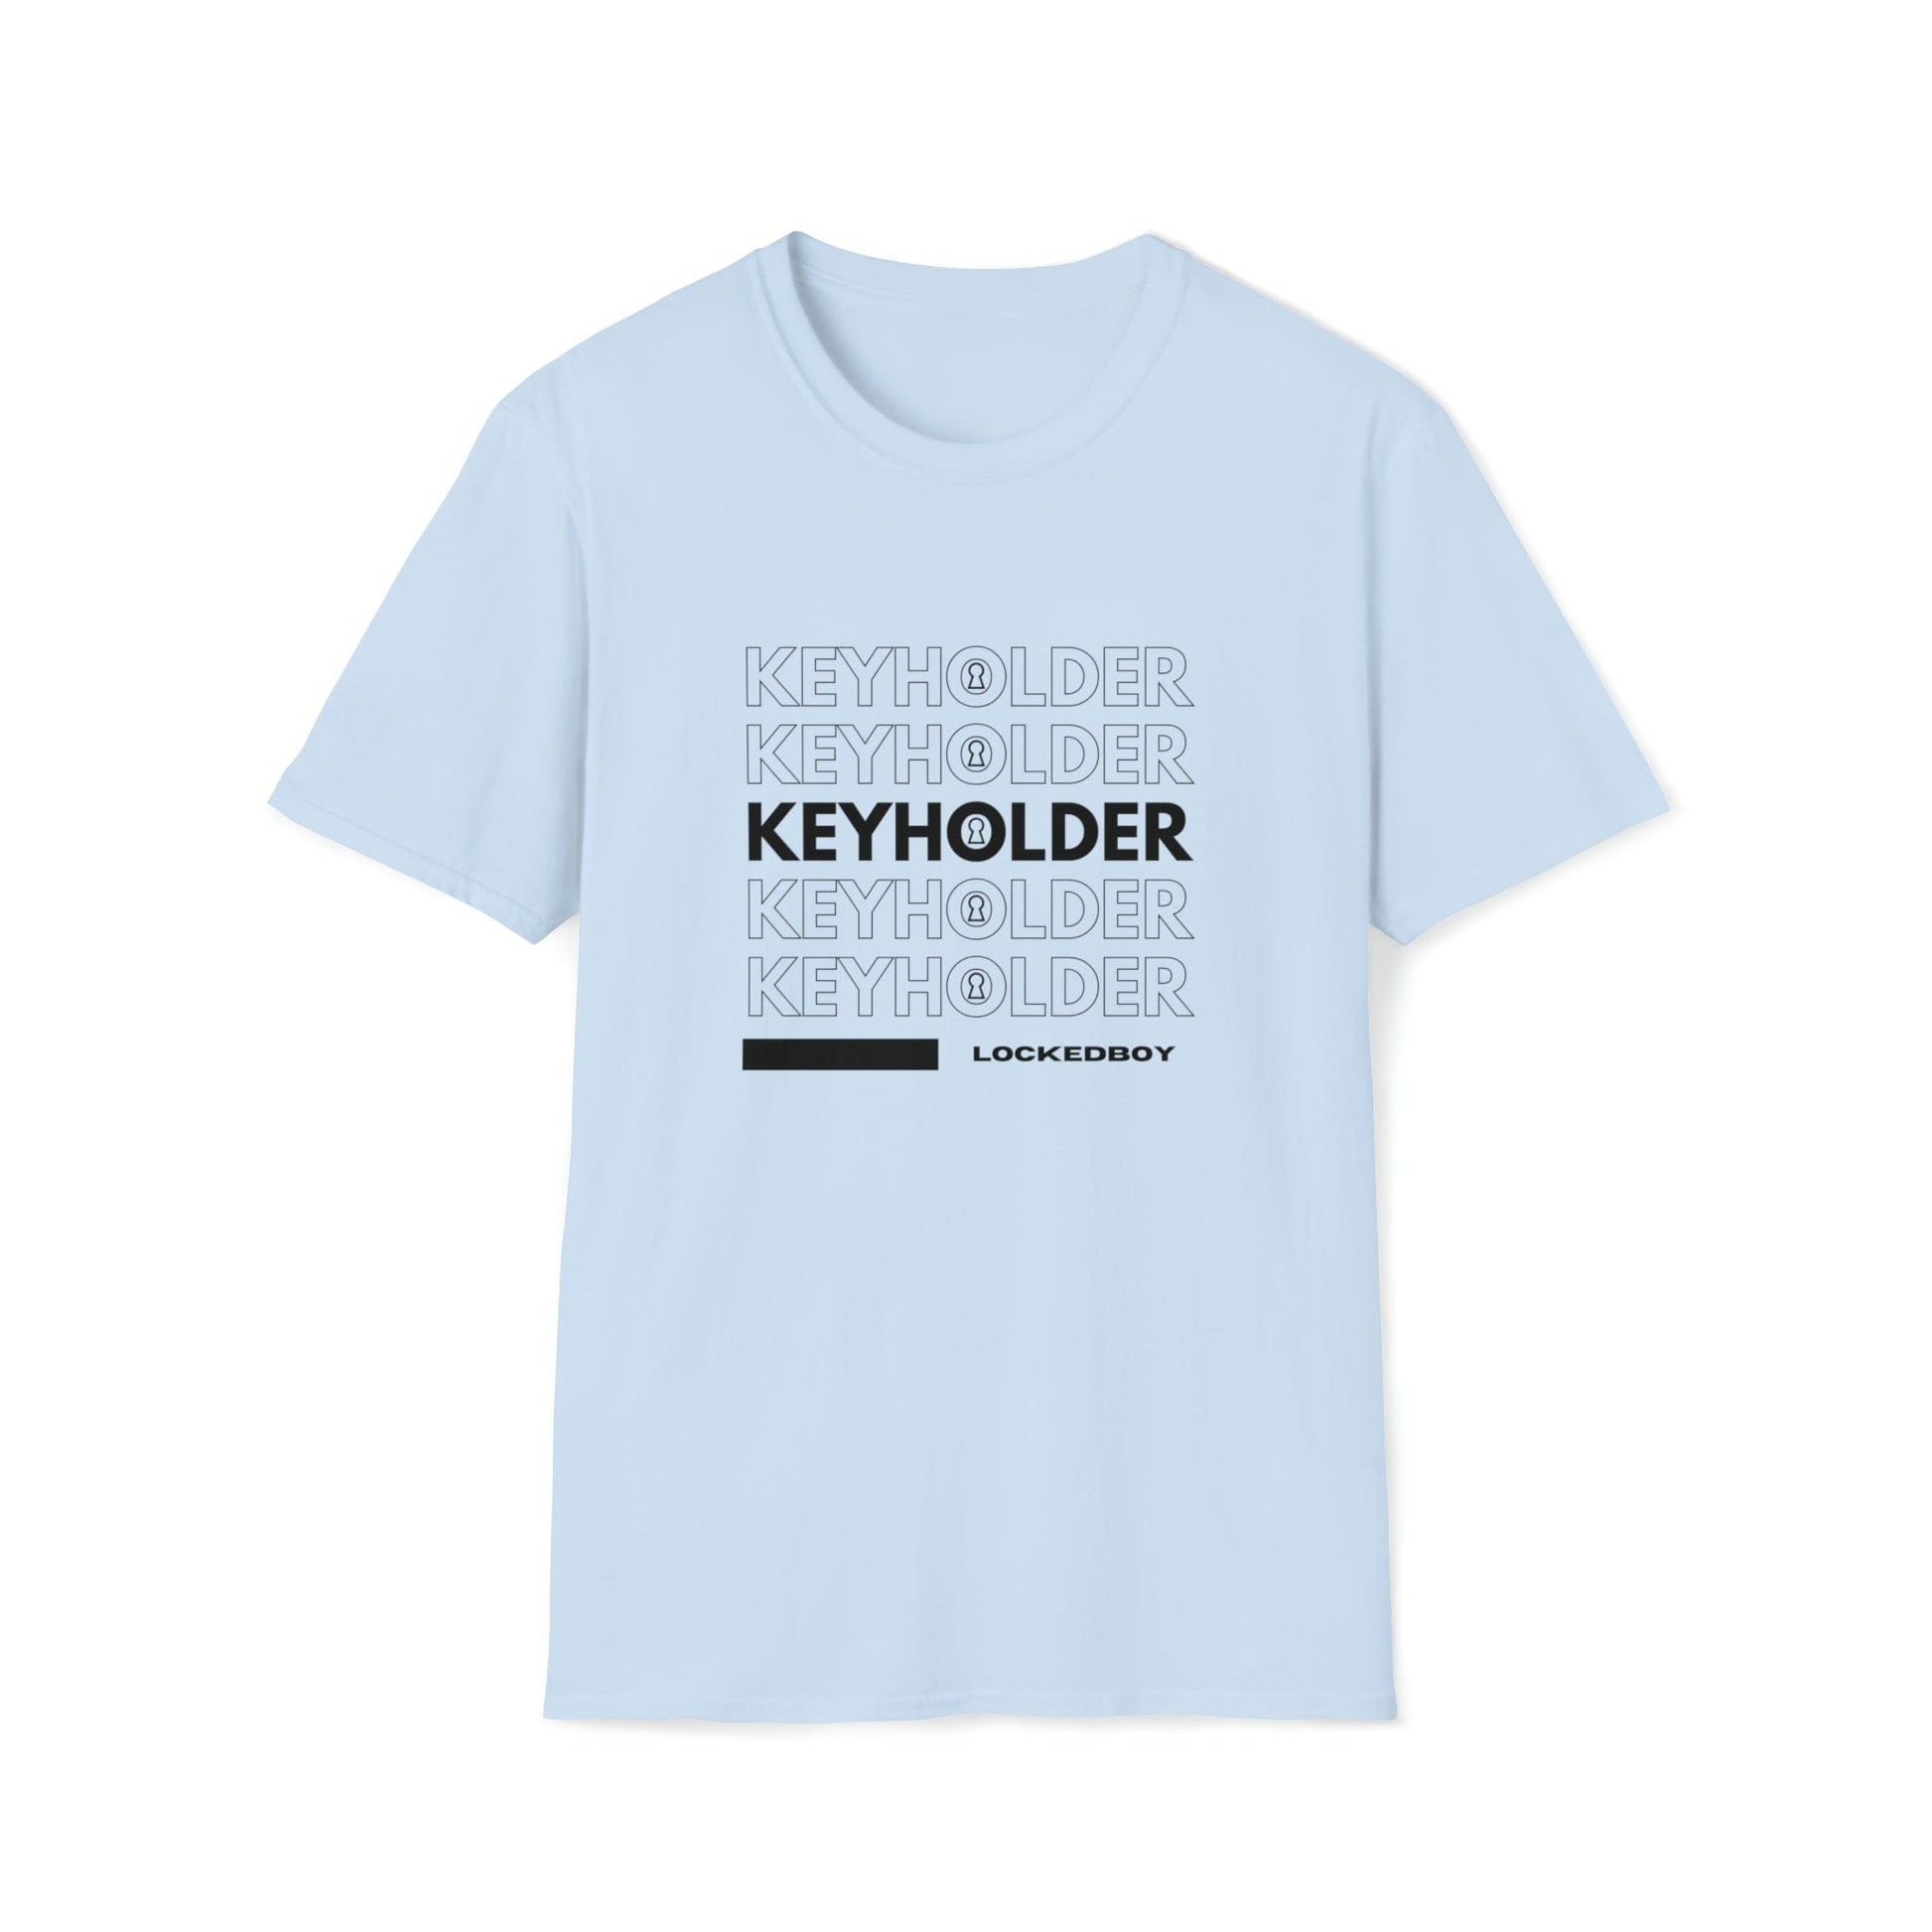 T-Shirt Light Blue / S KEYHOLDER bag Inspo - Chastity Shirts by LockedBoy Athletics LEATHERDADDY BATOR